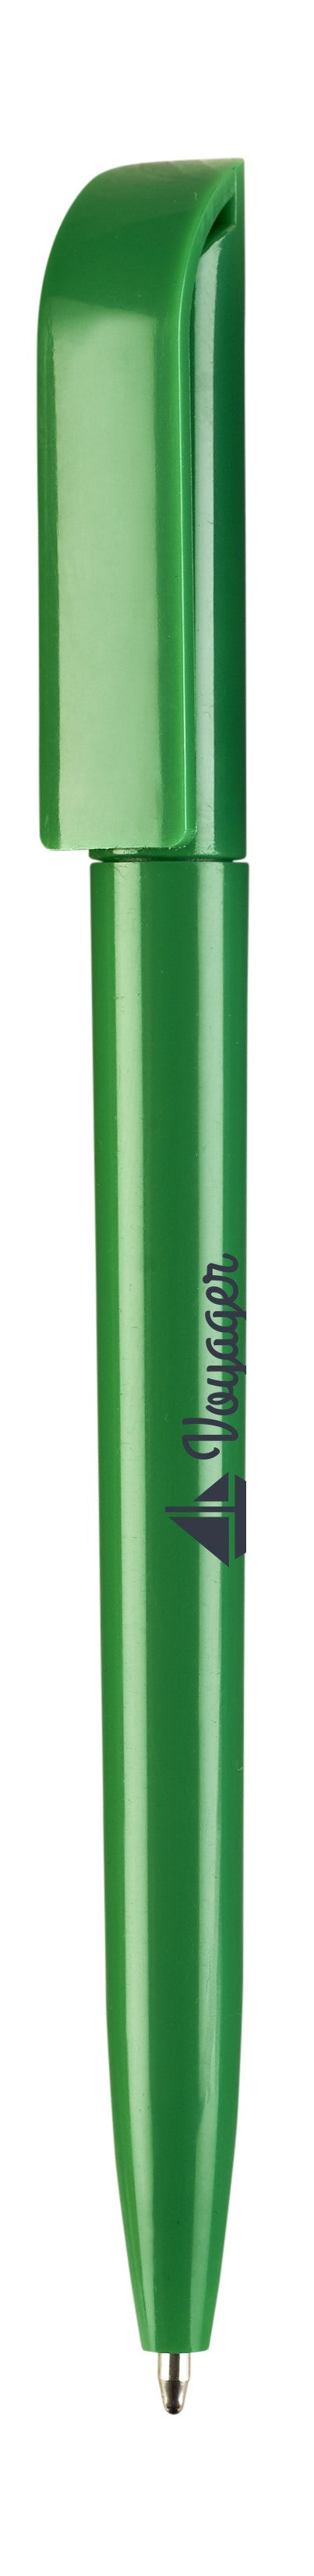 Metro Ball Pen (IDEA-0700)